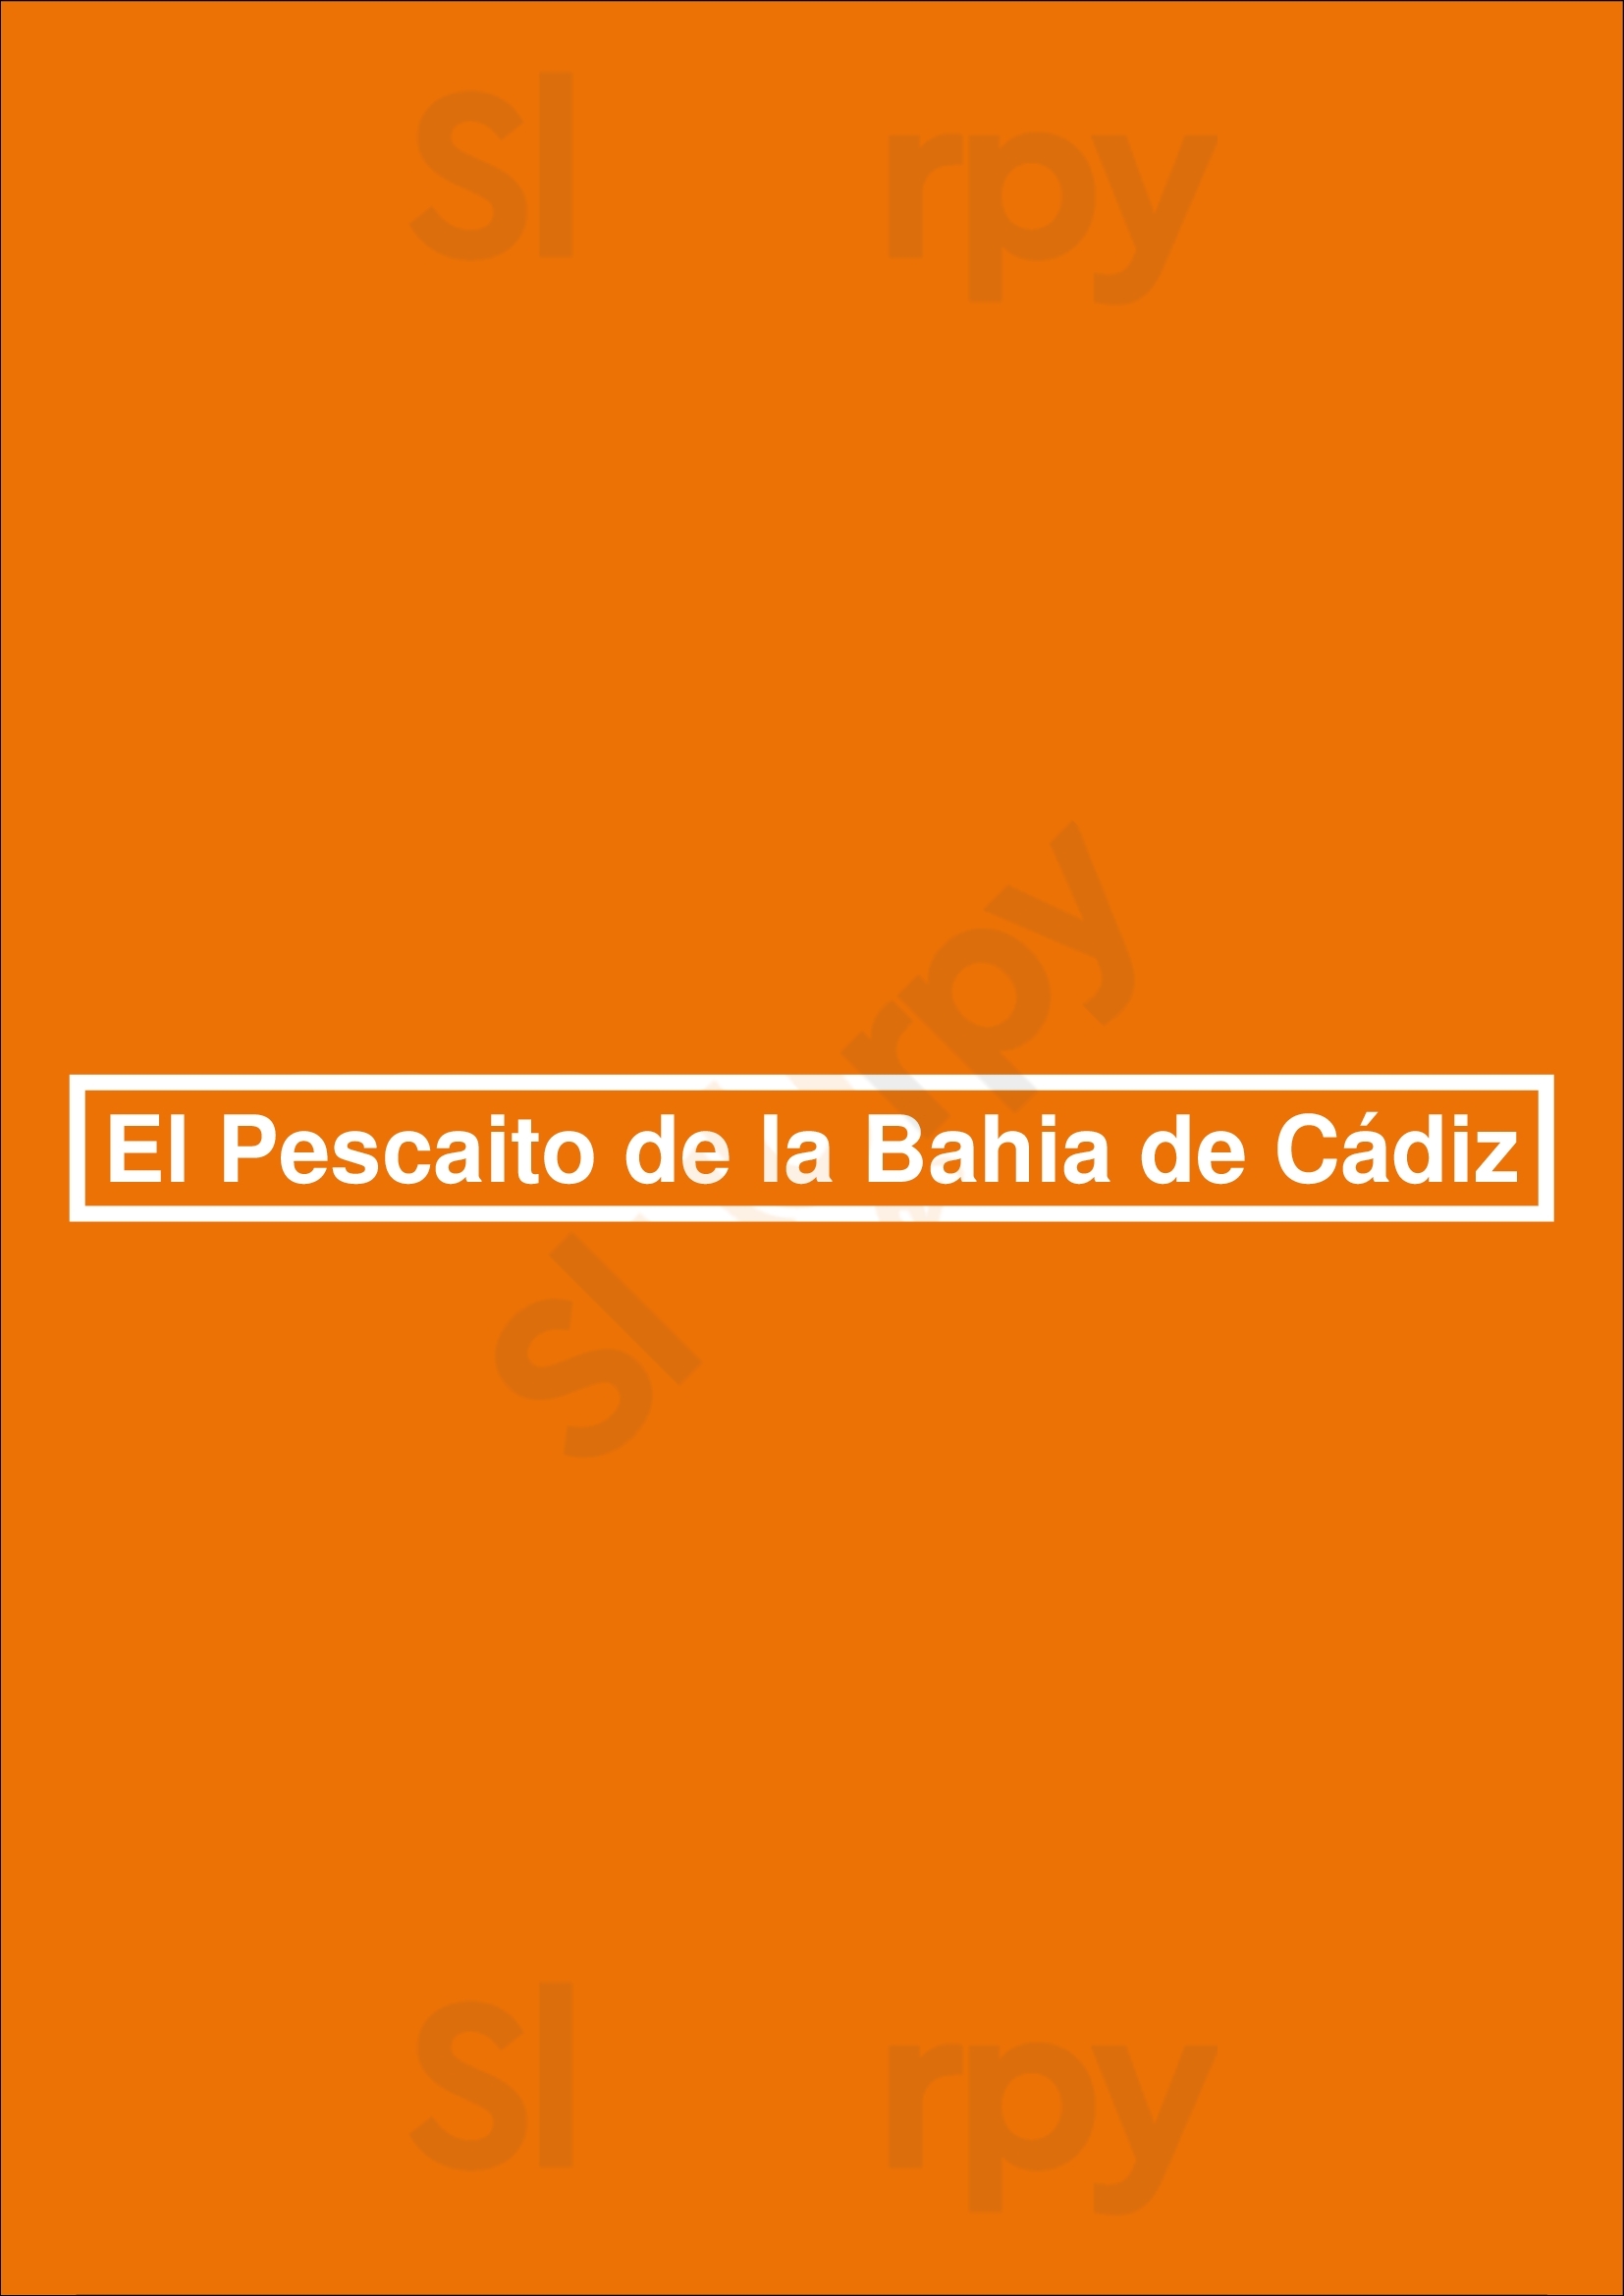 El Pescaito De La Bahia De Cádiz San Sebastián - Donostia Menu - 1